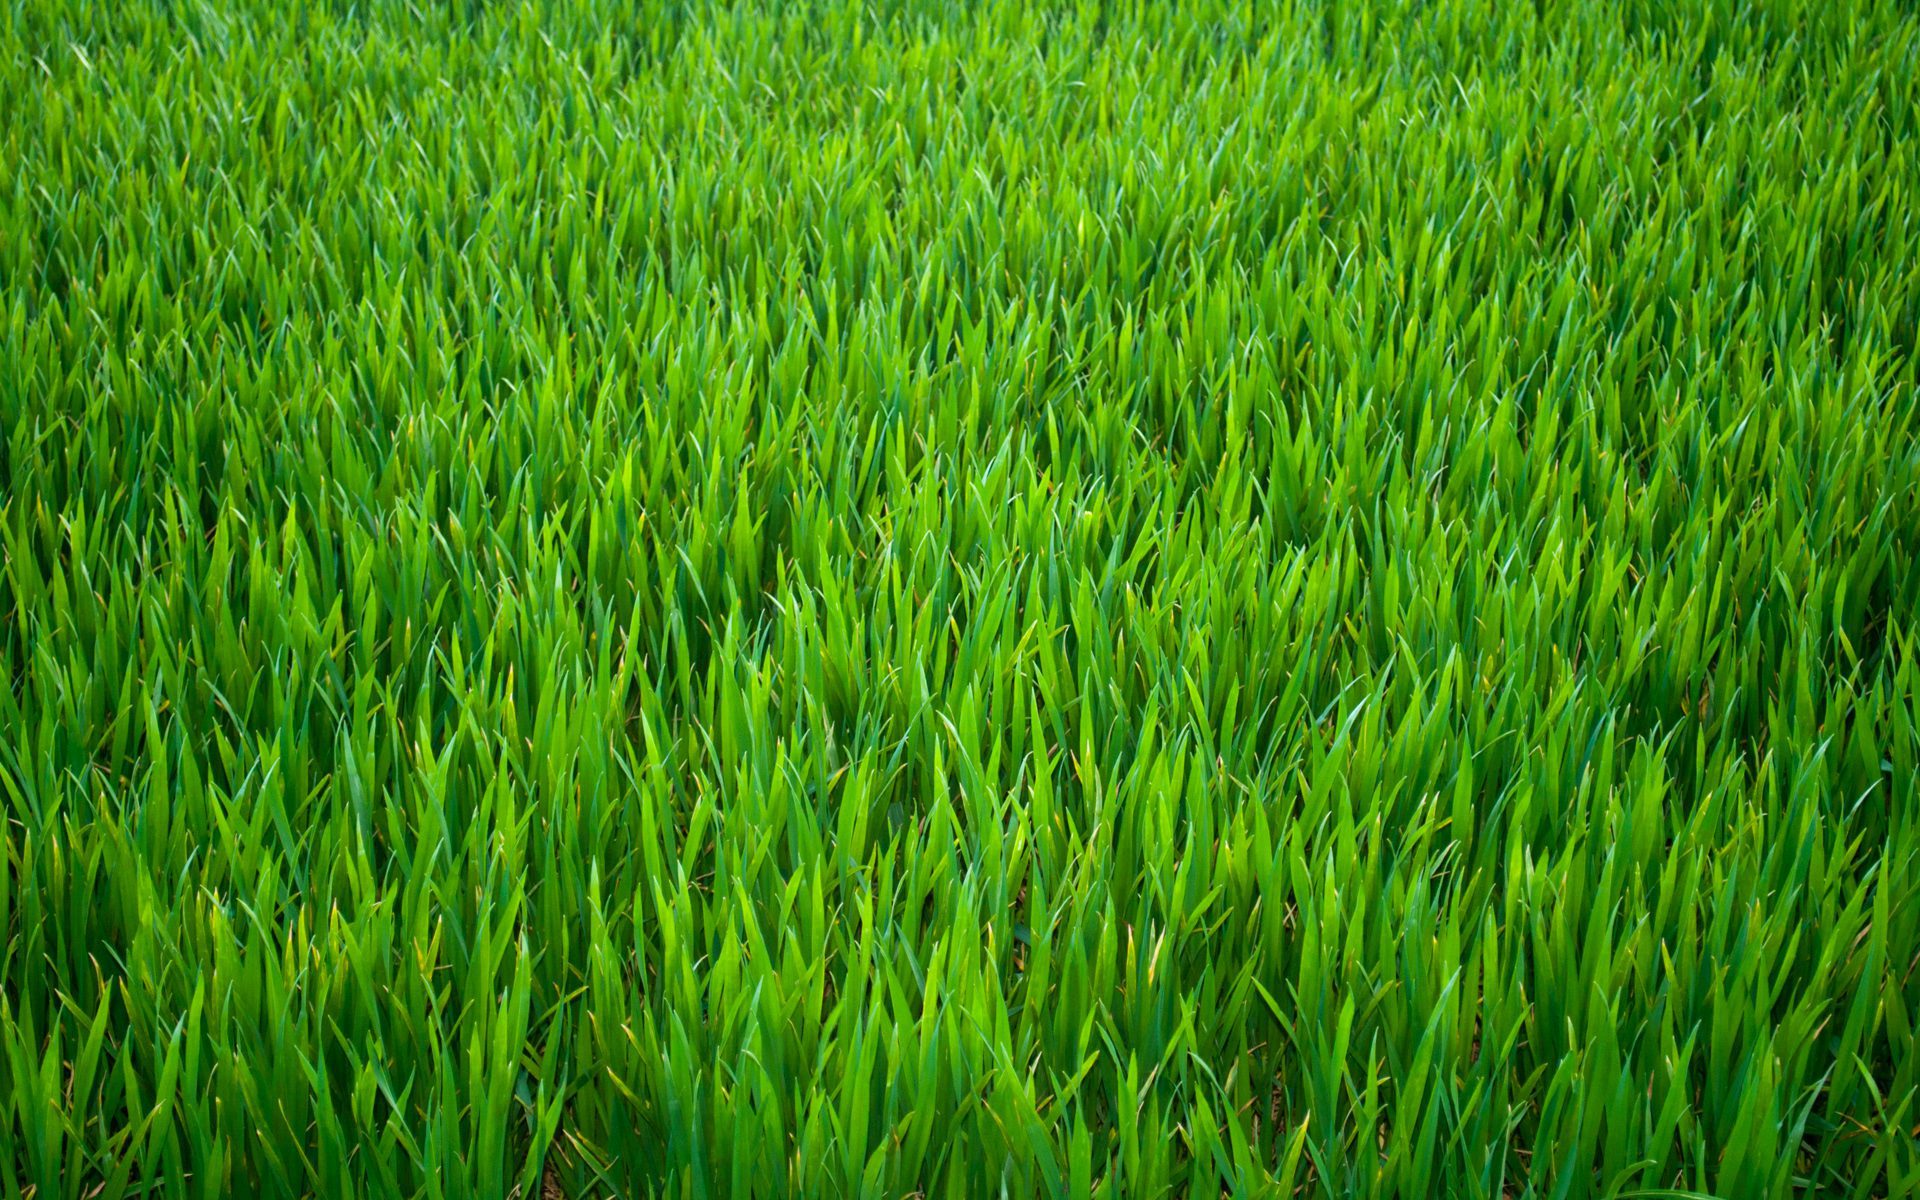 greengrass